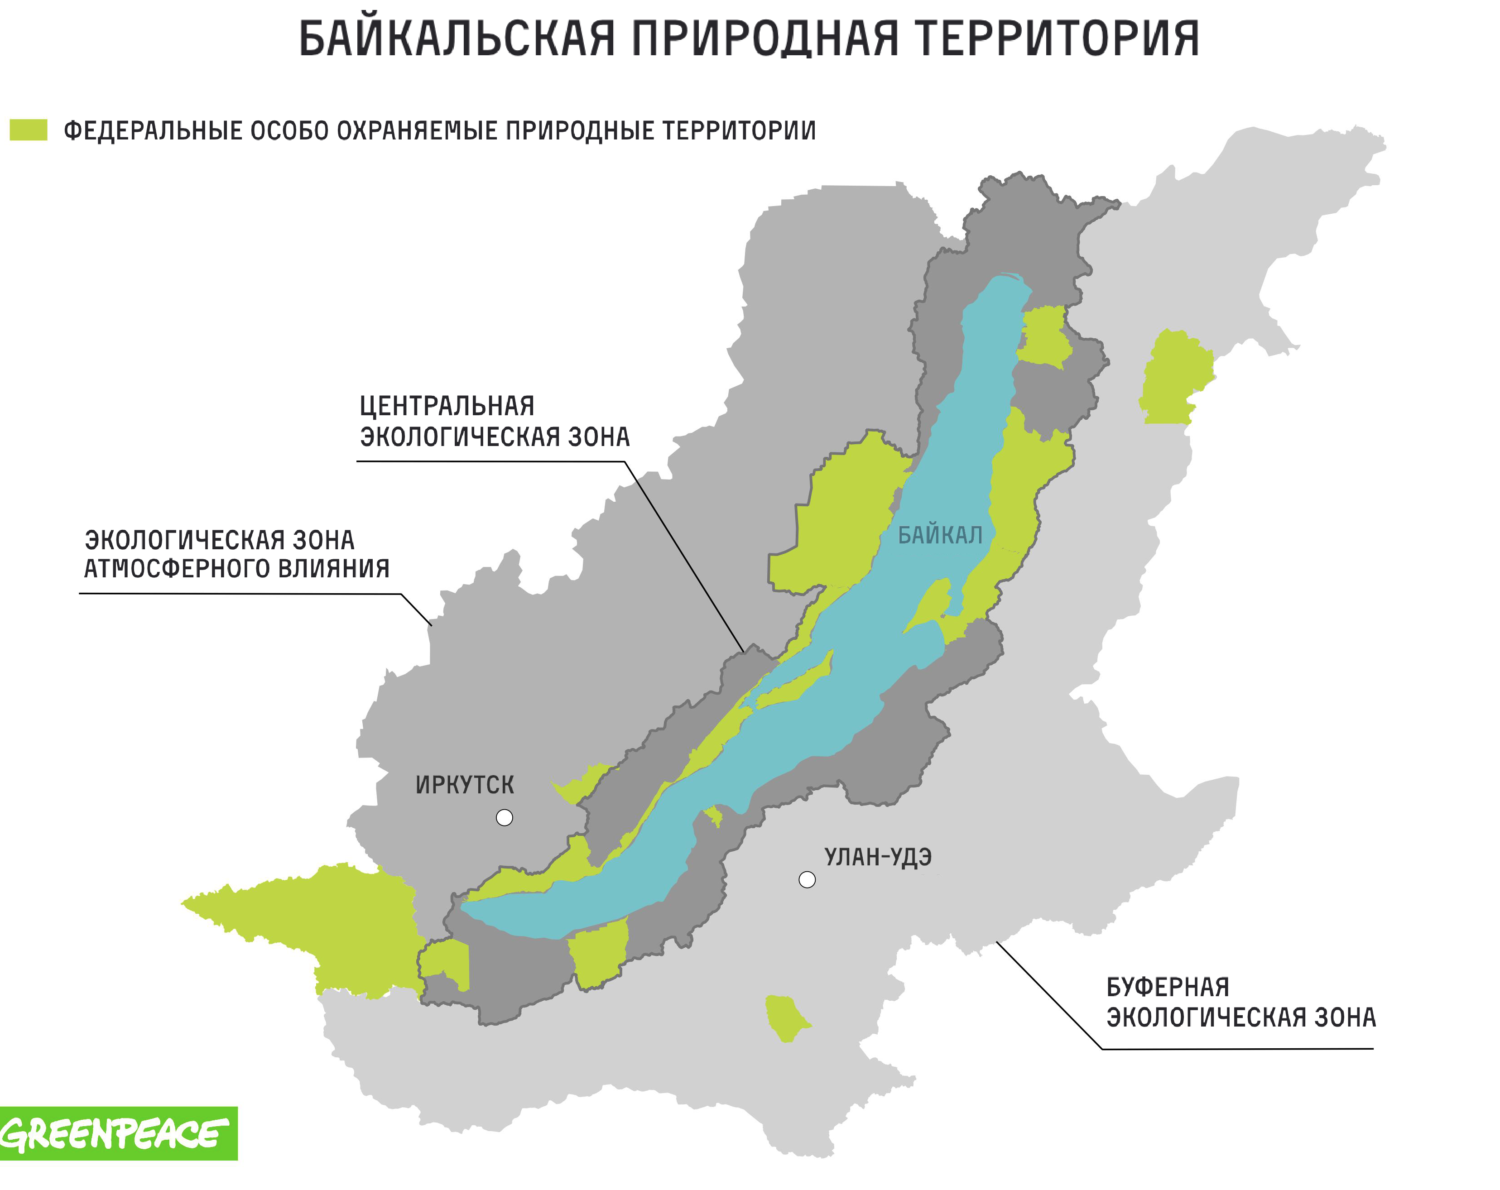 Охраняемые территории иркутской области. Байкальская природная территория БПТ. ООПТ Байкальской природной территории. Байкальская экологическая зона. Особо охраняемые природные территории вокруг Байкала.